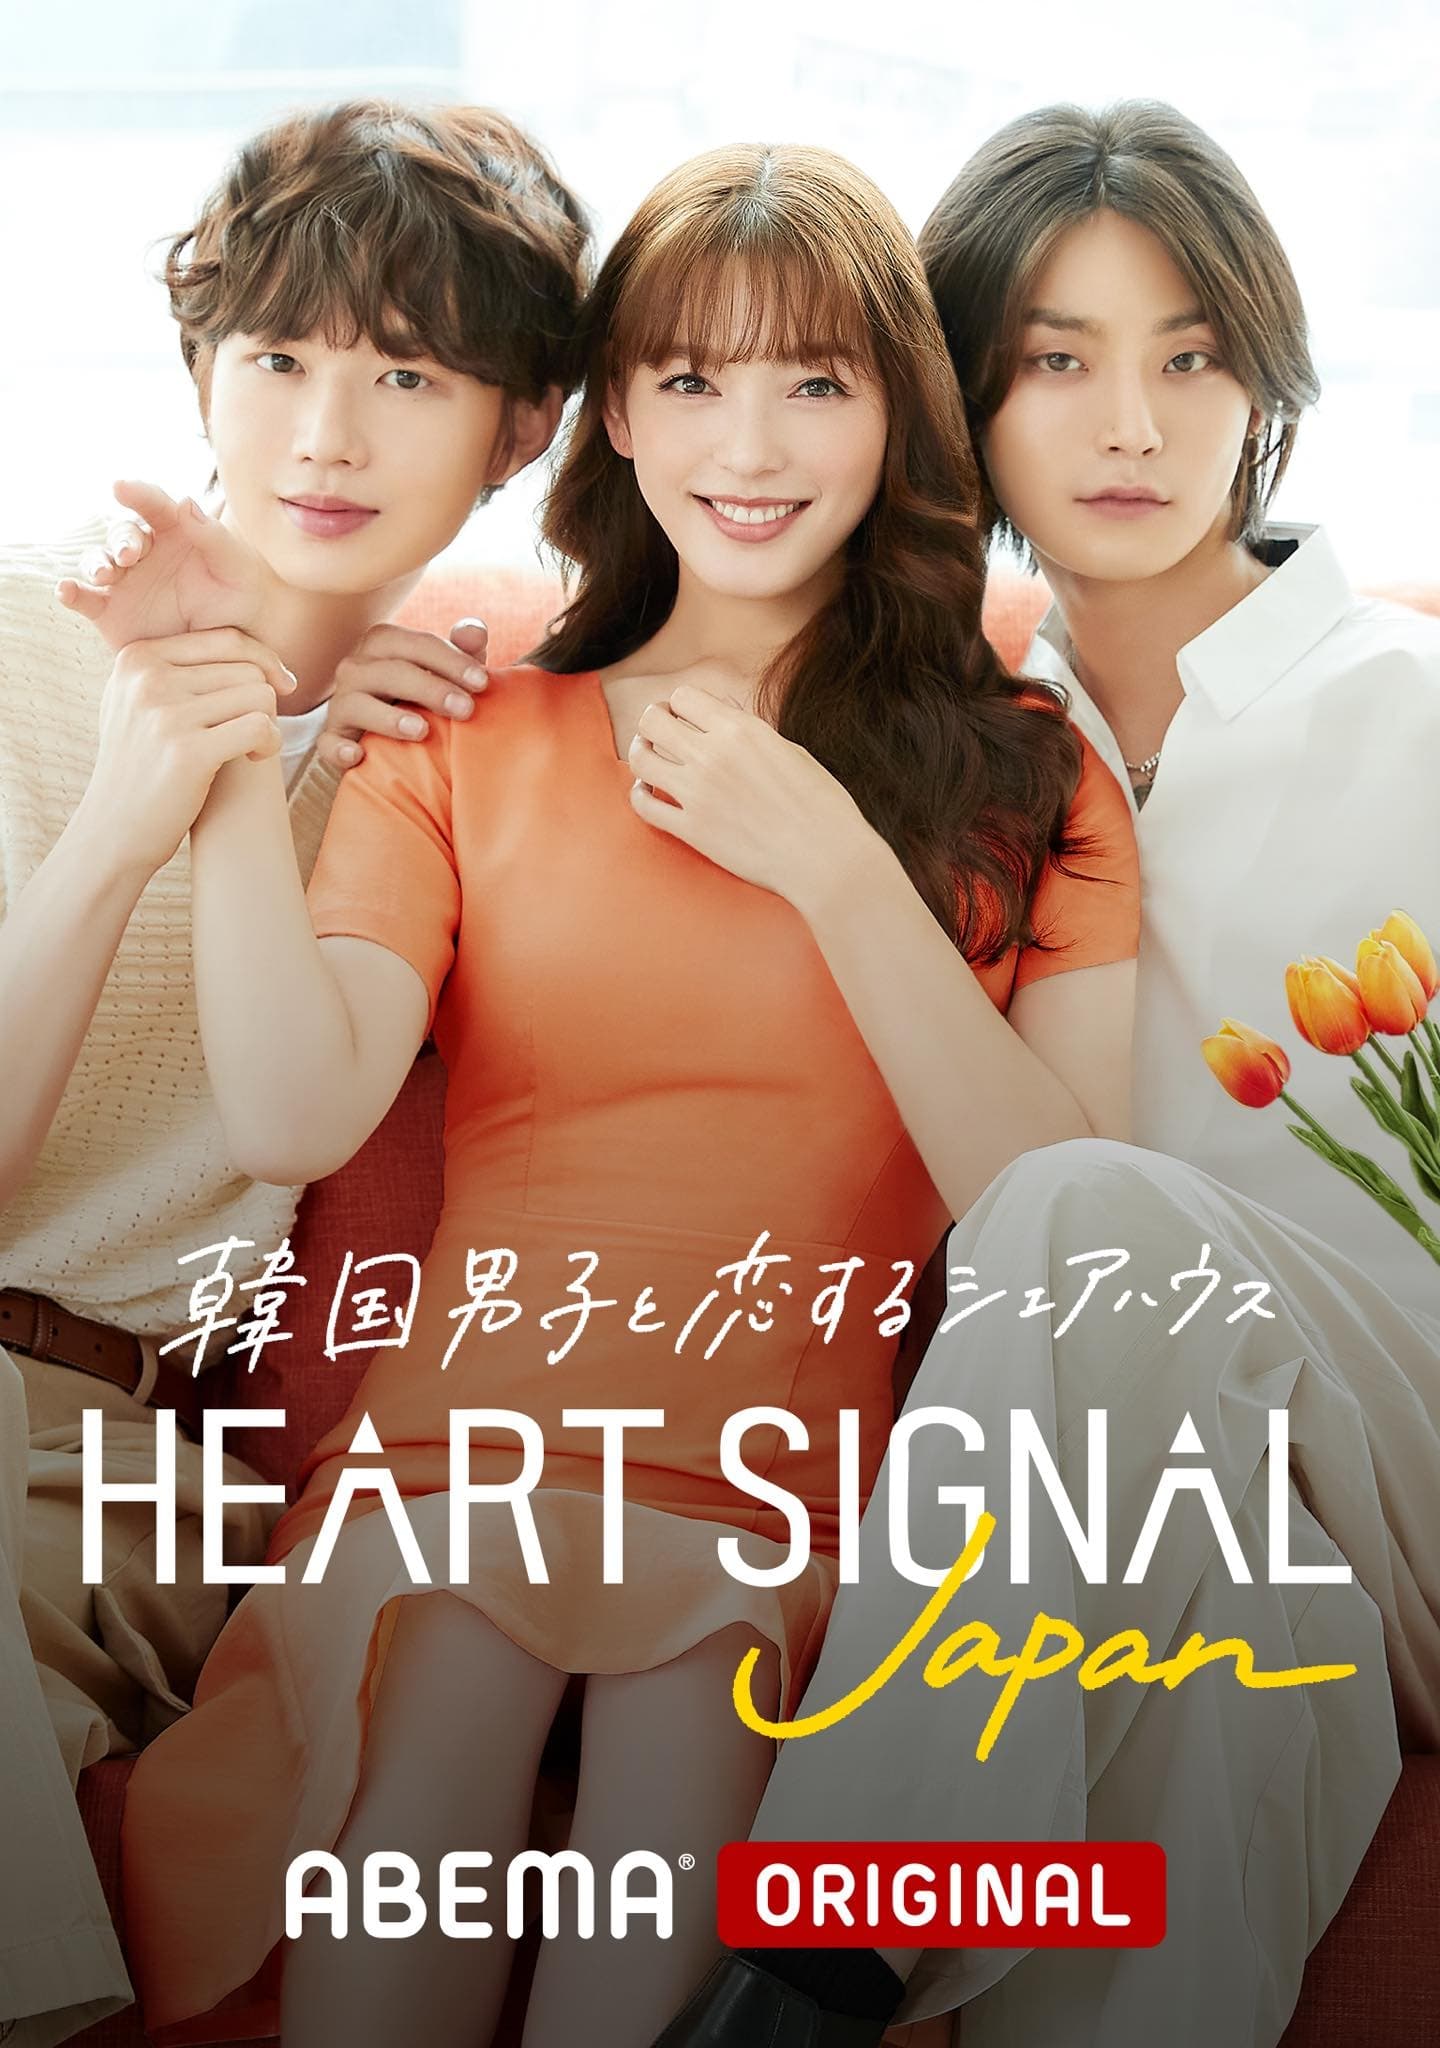 TV ratings for Heart Signal Japan in Australia. AbemaTV TV series